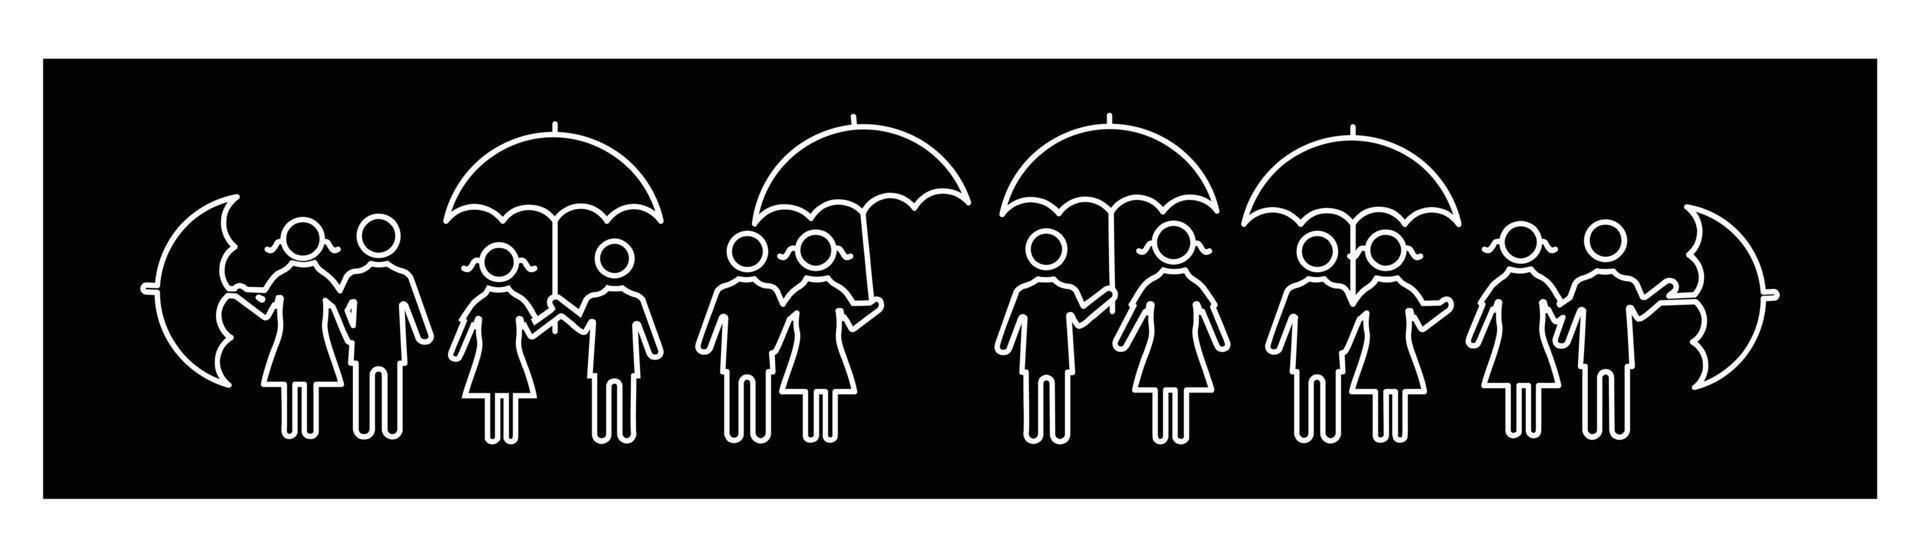 Mann und Frau mit Regenschirm-Icon-Set, männlich und weiblich unter dem Regen in verschiedenen Posen-Icons für Design auf schwarzem Hintergrund. vektor